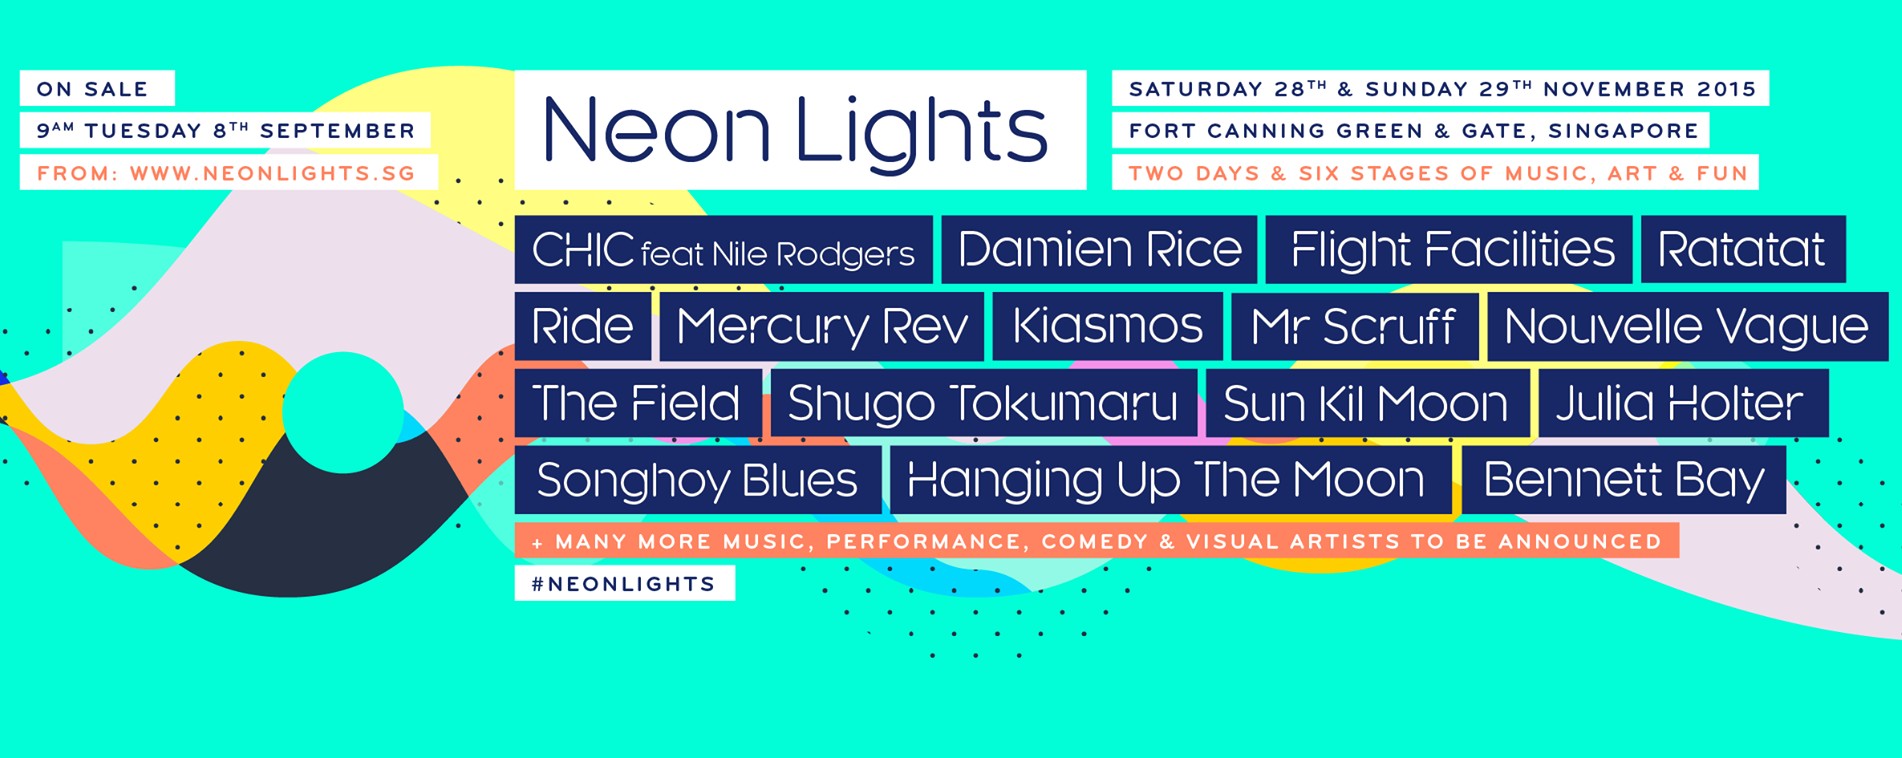 Neon Lights 2015